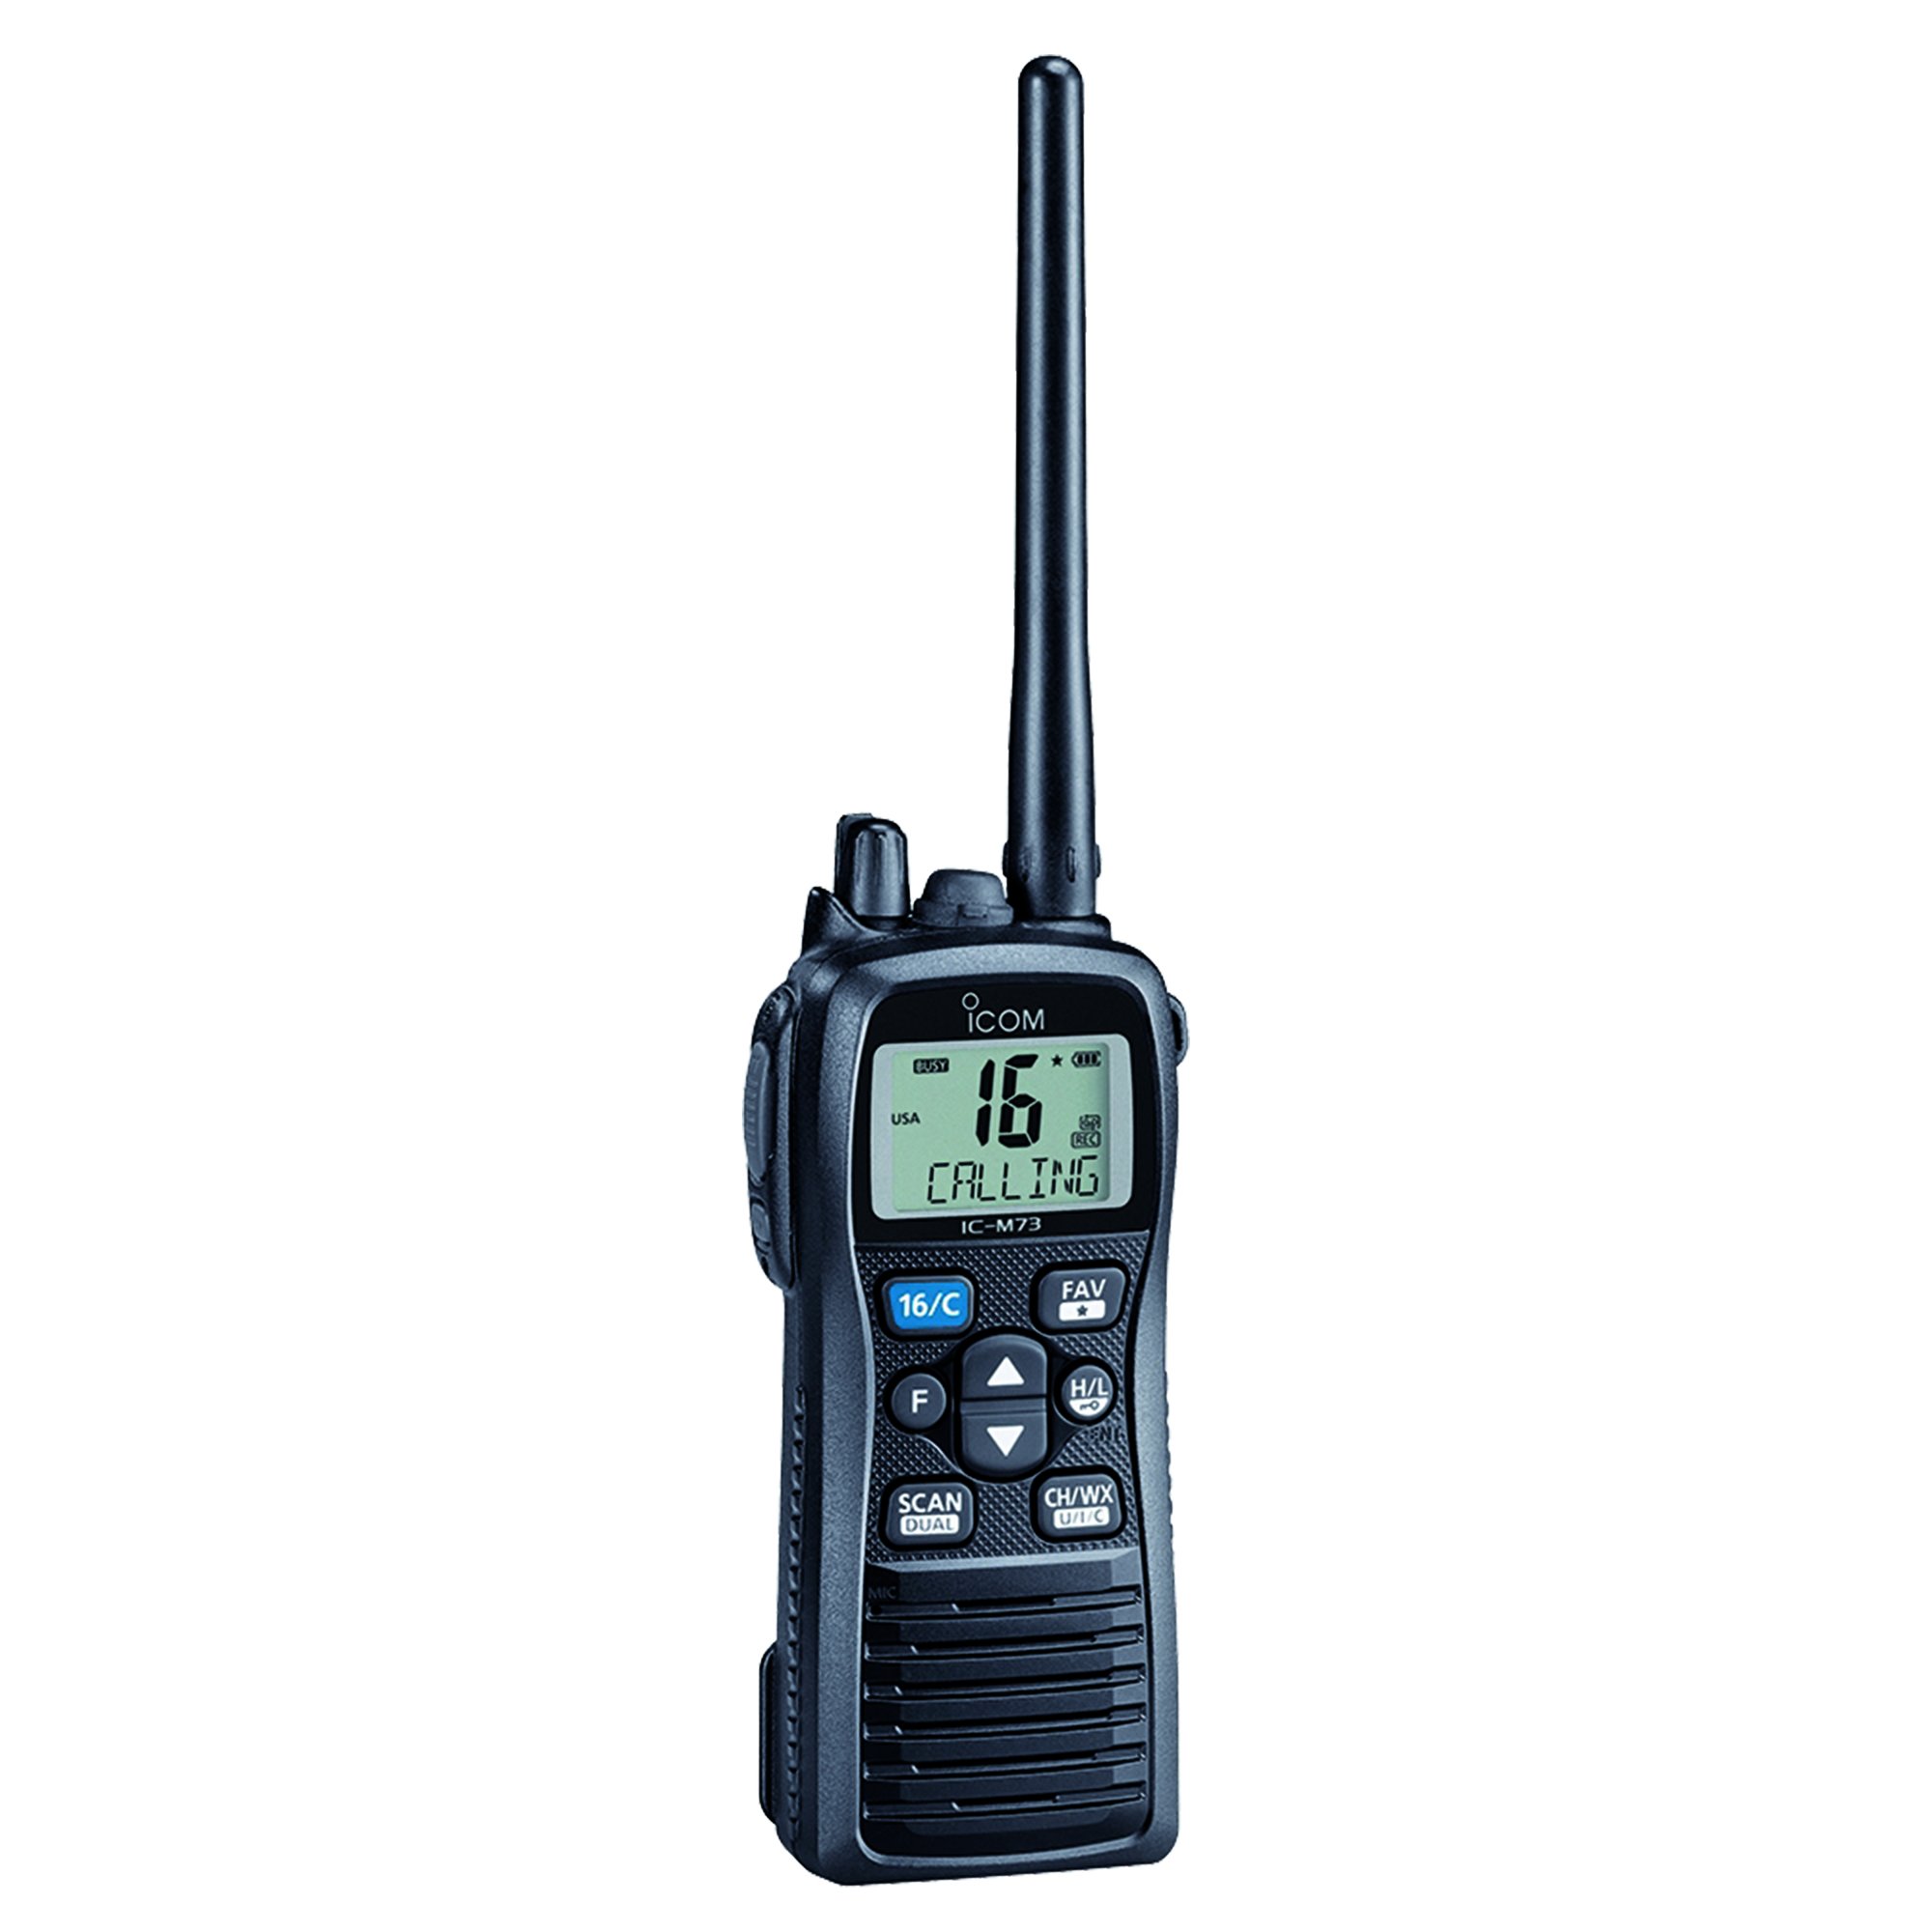 ICOM IC-M73 01 IC-M73 01 ハンドヘルド VHF マリンラジオ、6 ワット...